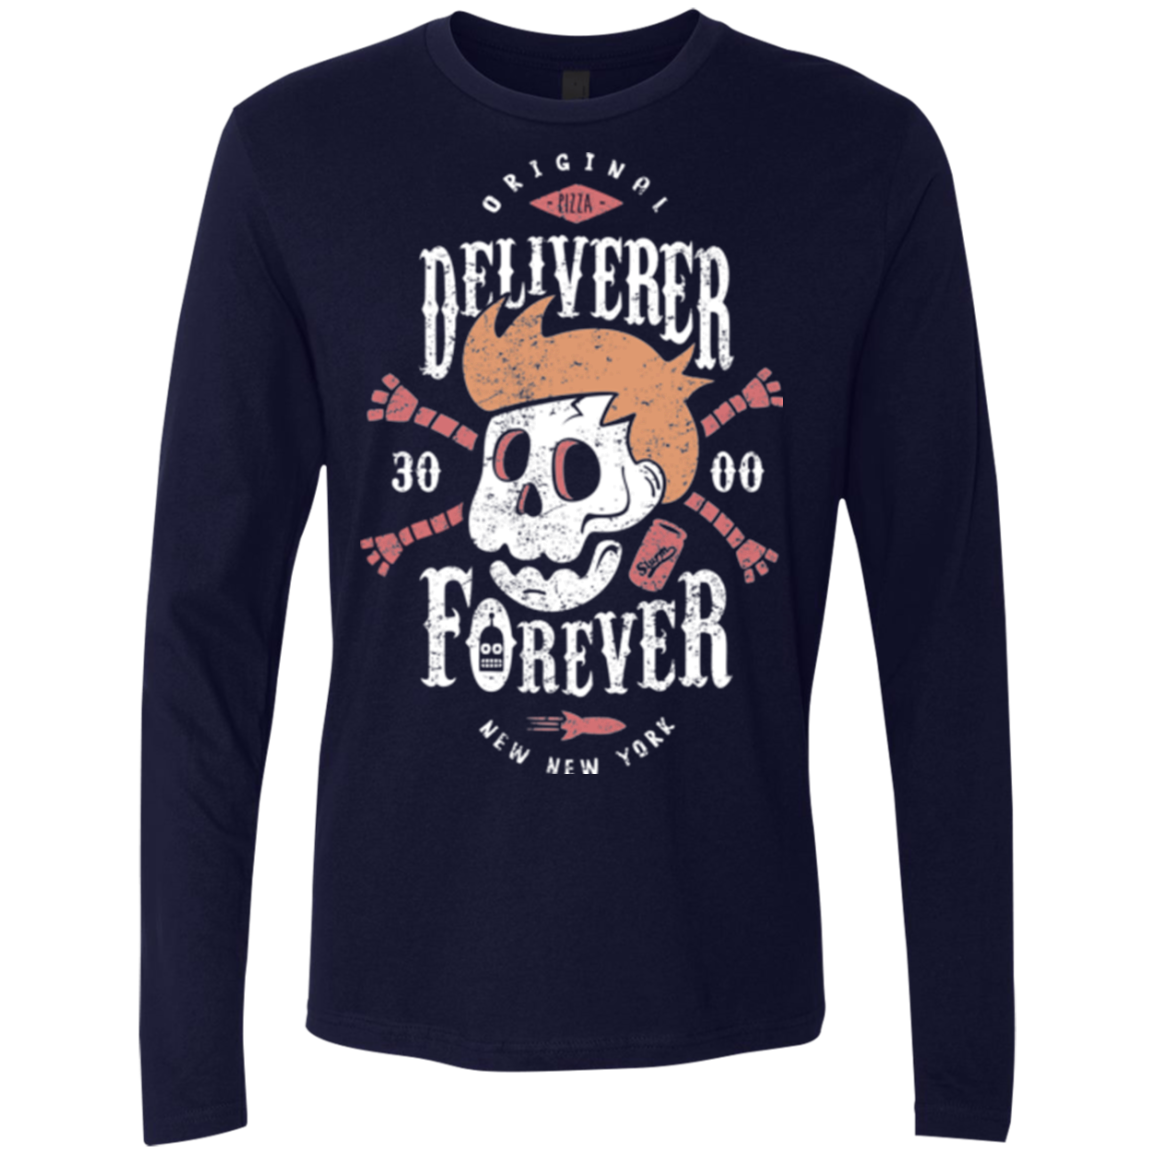 Deliverer Forever Men's Premium Long Sleeve